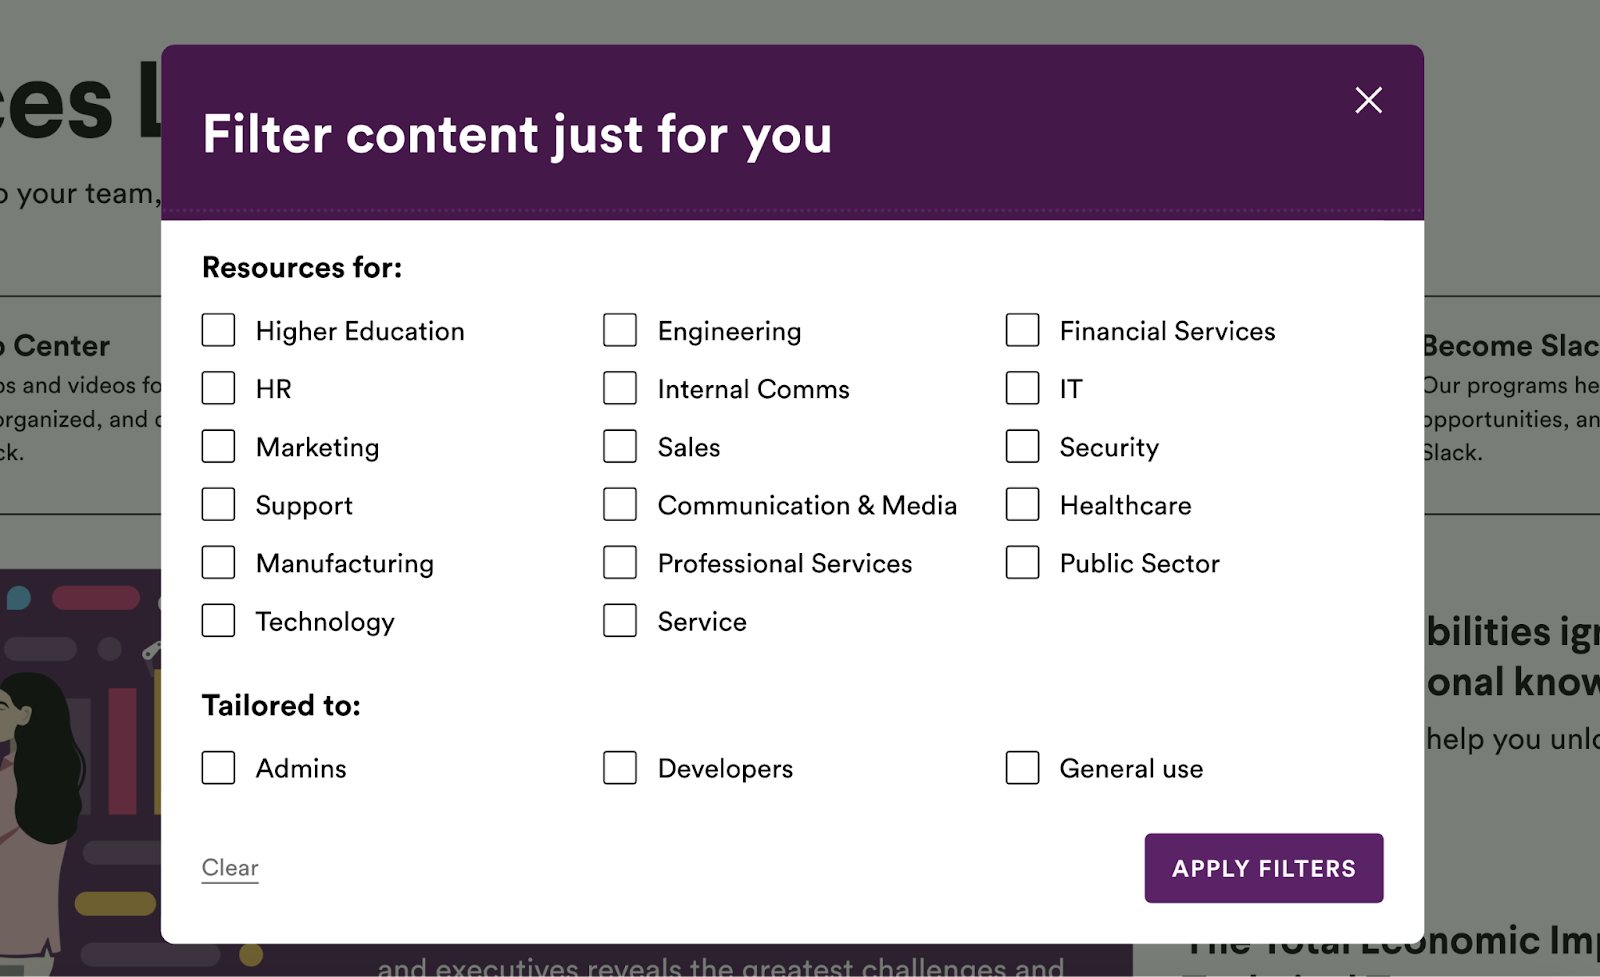 "Filer content just for you" pop-up on Slack's website